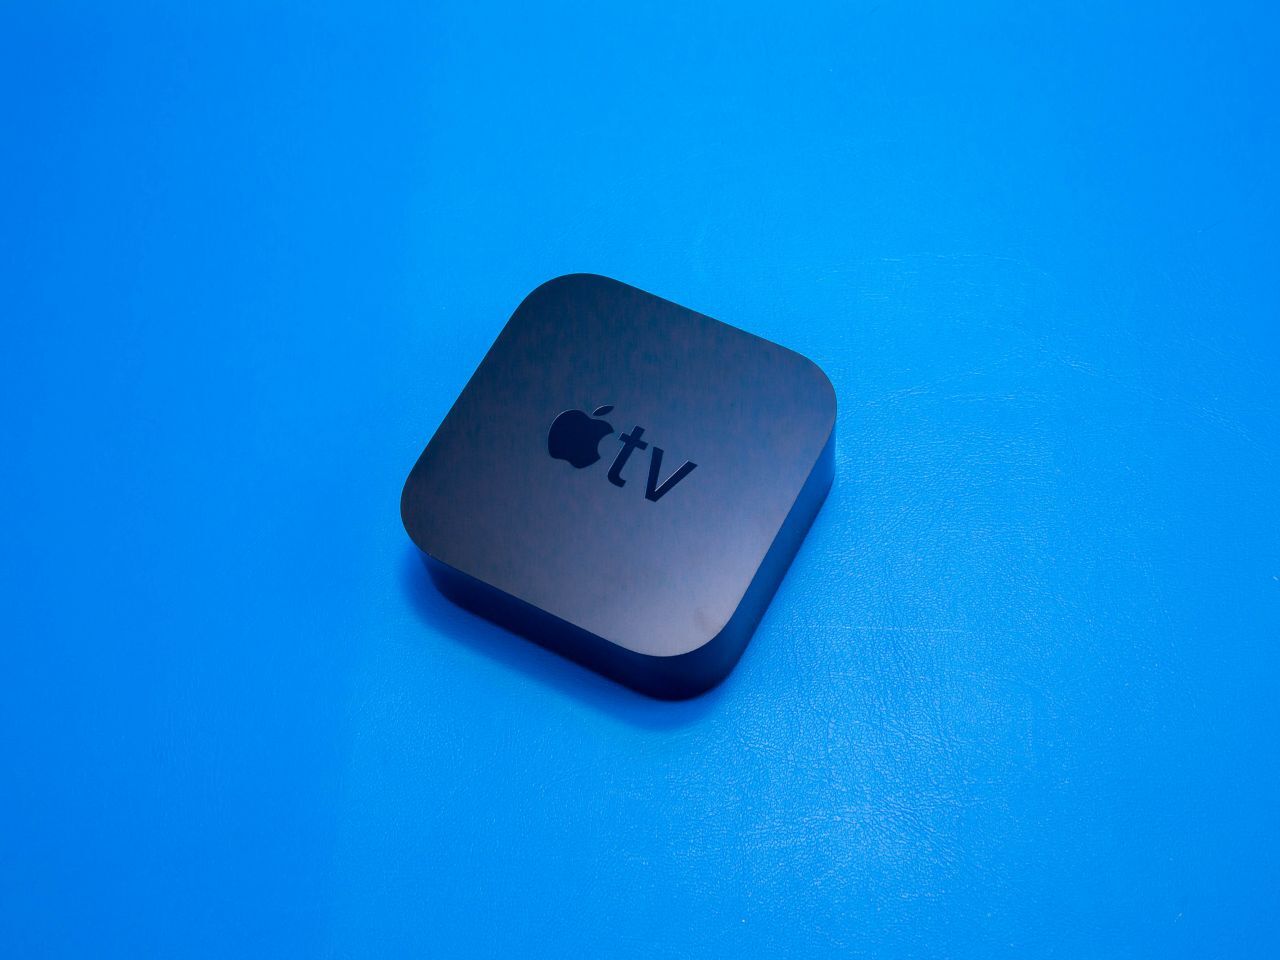 新型「Apple TV」、2022年内に発売か--低価格化の可能性も - CNET 